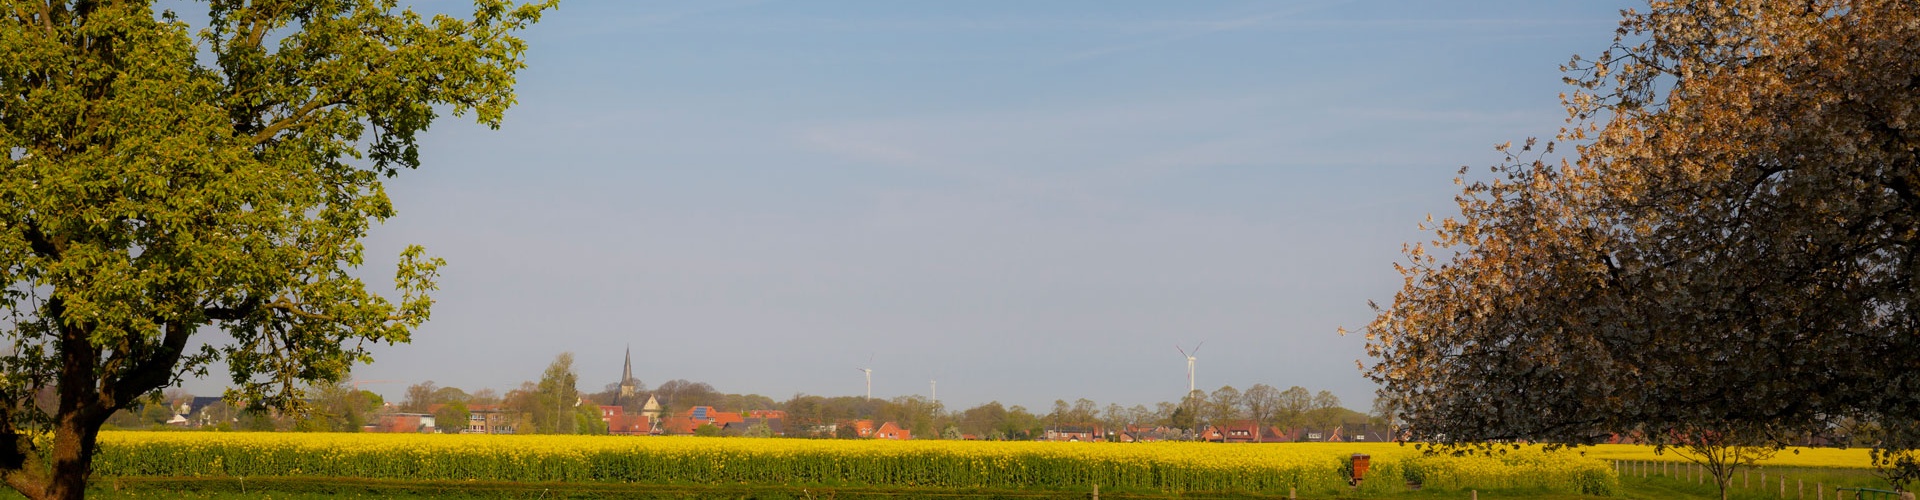 asbeck-kreis-borken-panorama